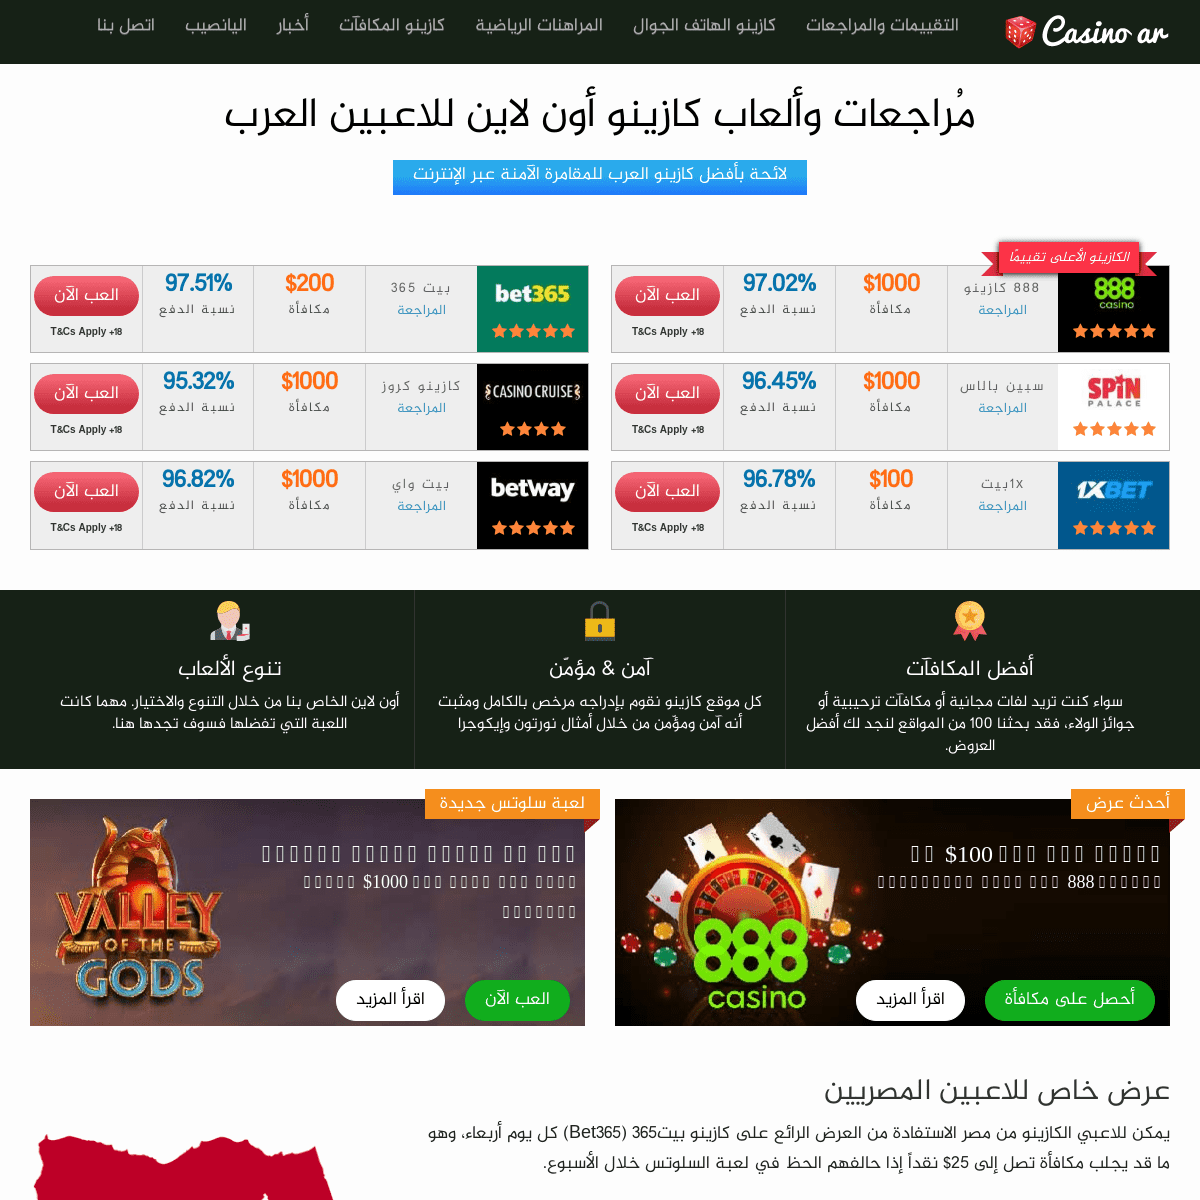 كازينو العرب - المراجعات والالعاب وكازينو على الانترنت المكافآت